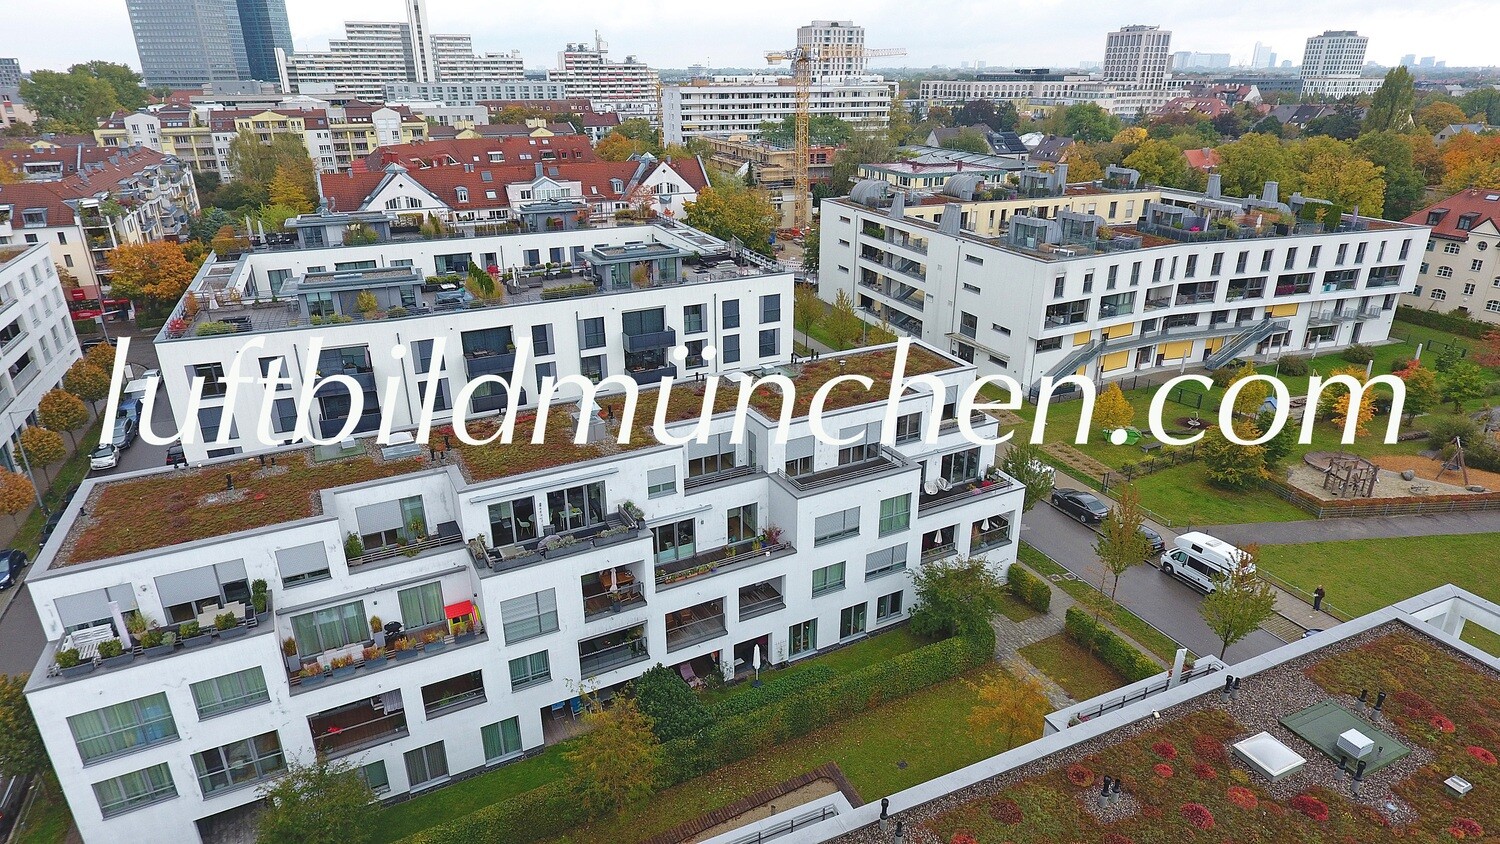 Luftbildfoto, Luftaufnahme, Luftbild, Foto mit Drohne, München, Foto von oben, Wohngebiet, Milbertshofen,Schwabing Nord, Nordschwabing, Neubau,